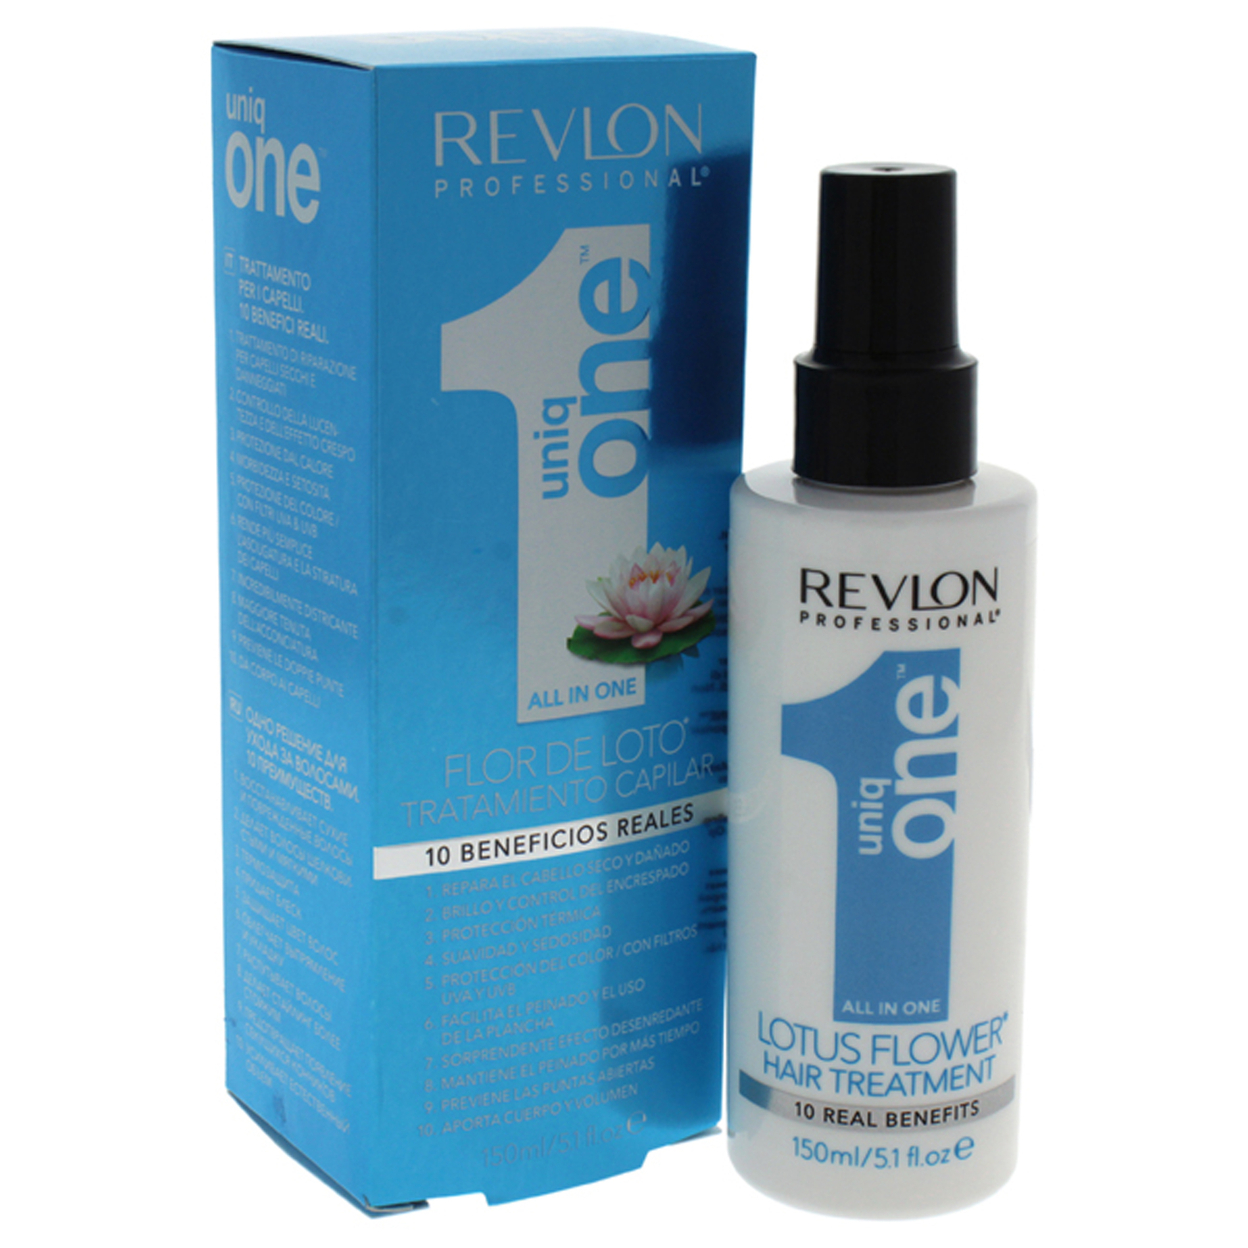 Revlon Uniq One Lotus Flower Hair Treatment 5.1 Oz